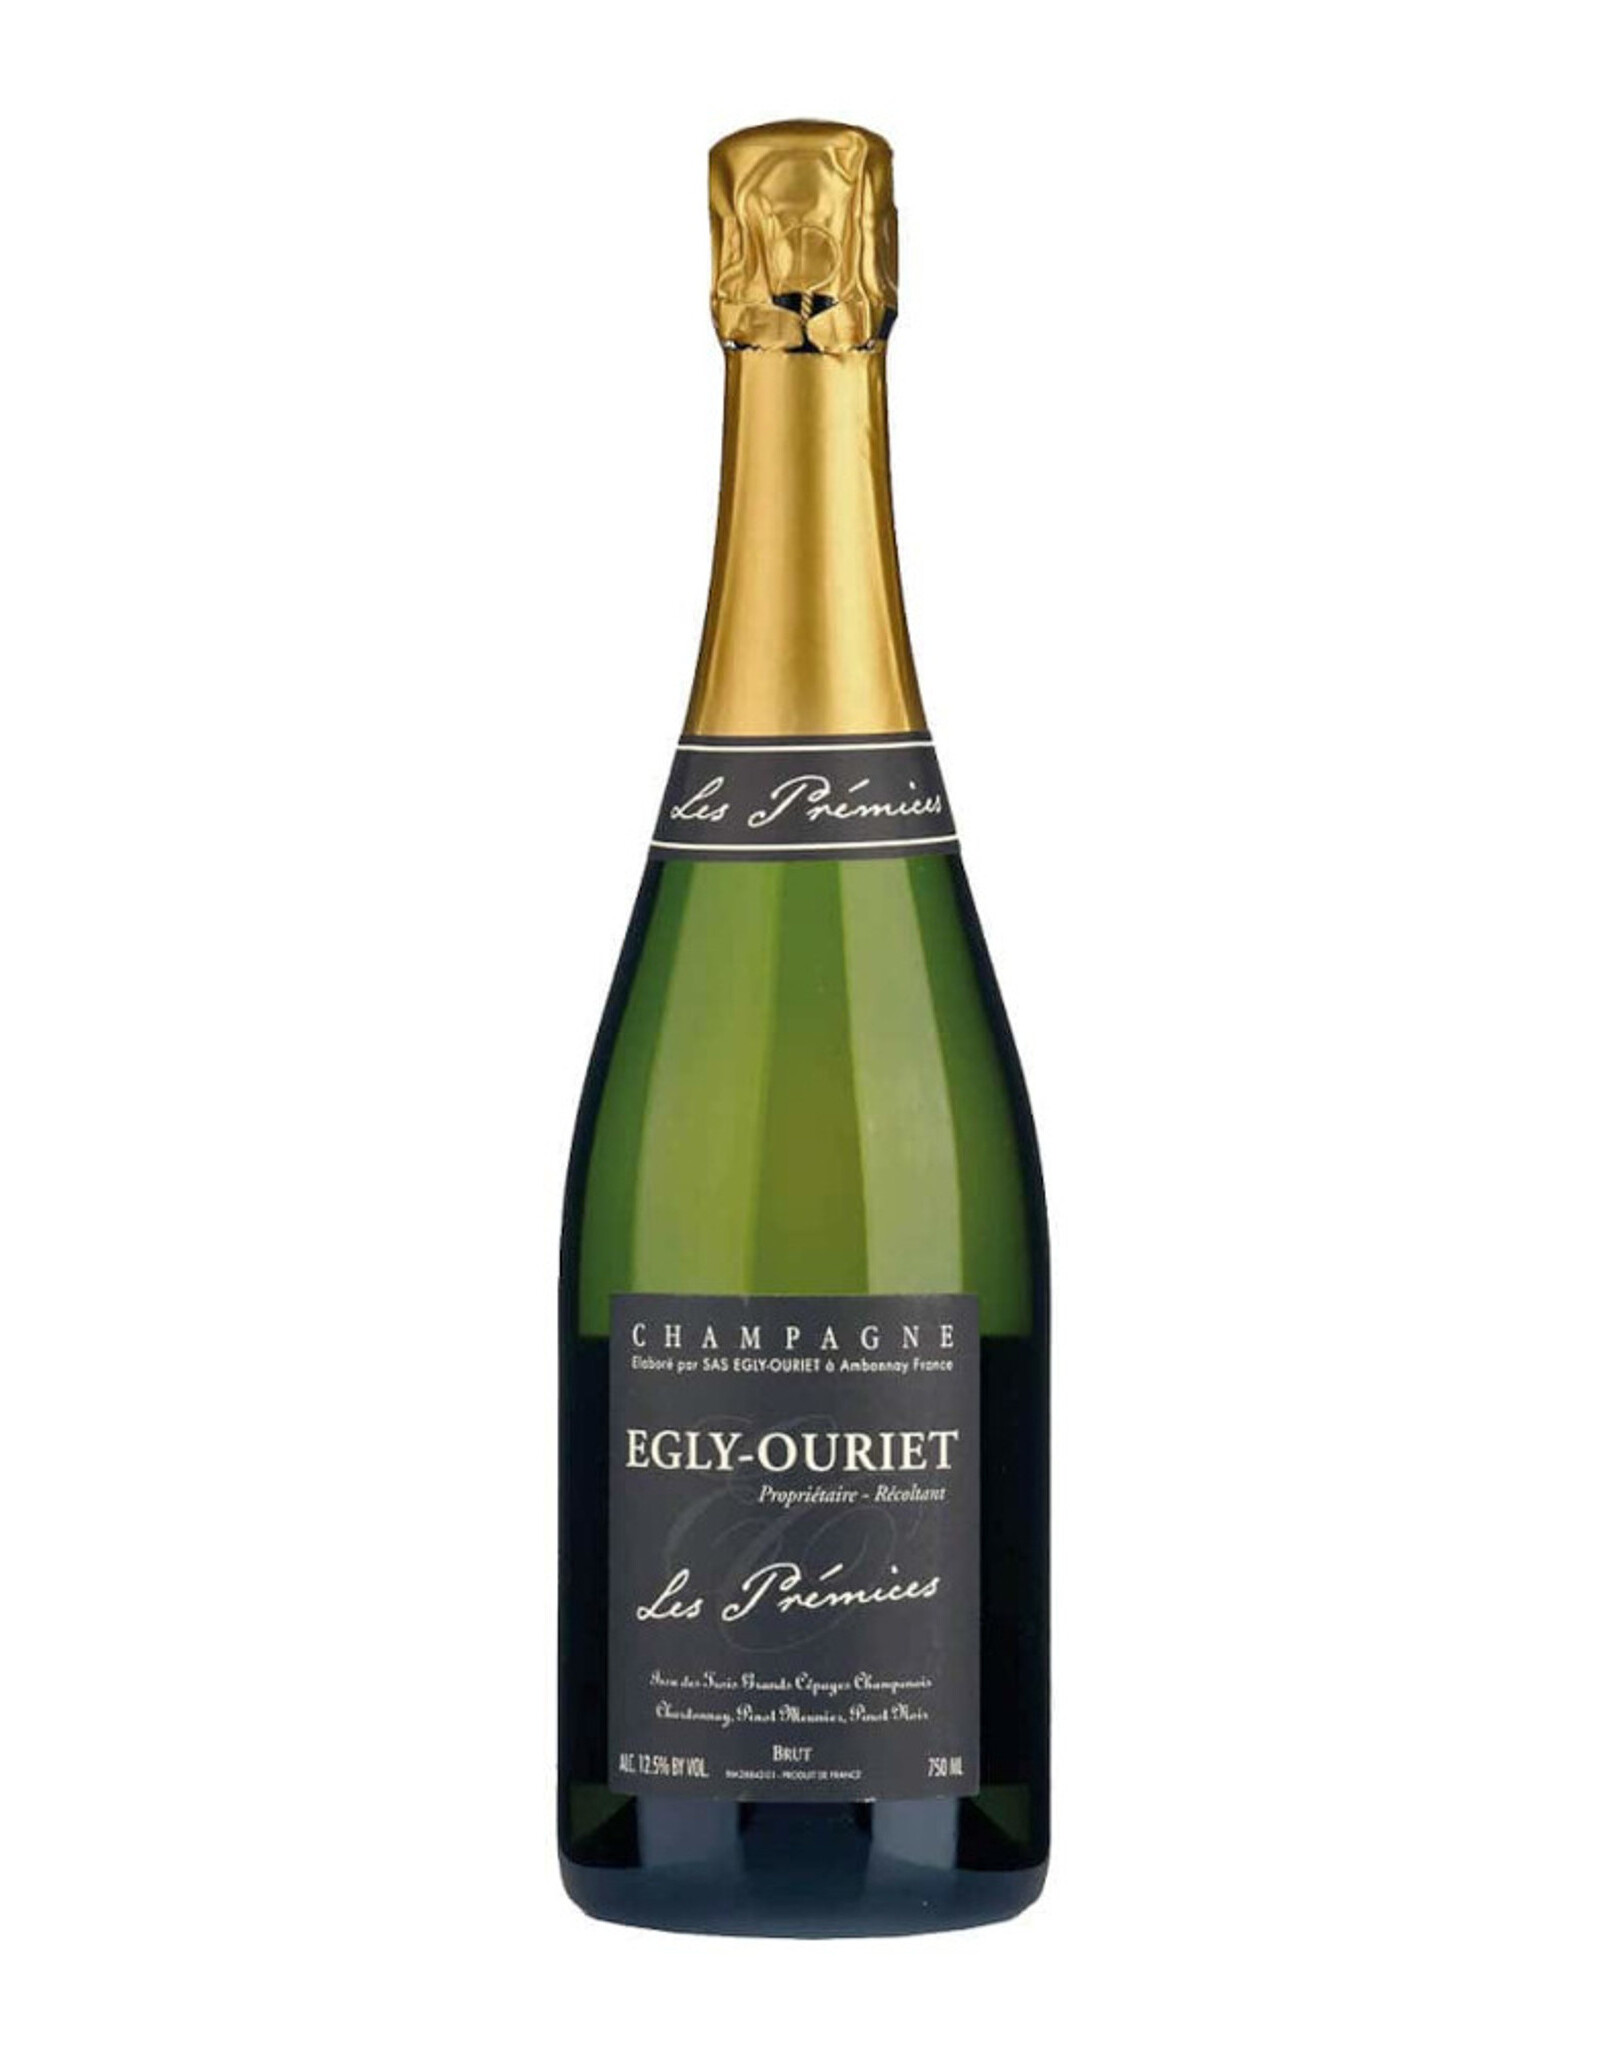 Egly-Ouriet Les Prémices Champagne